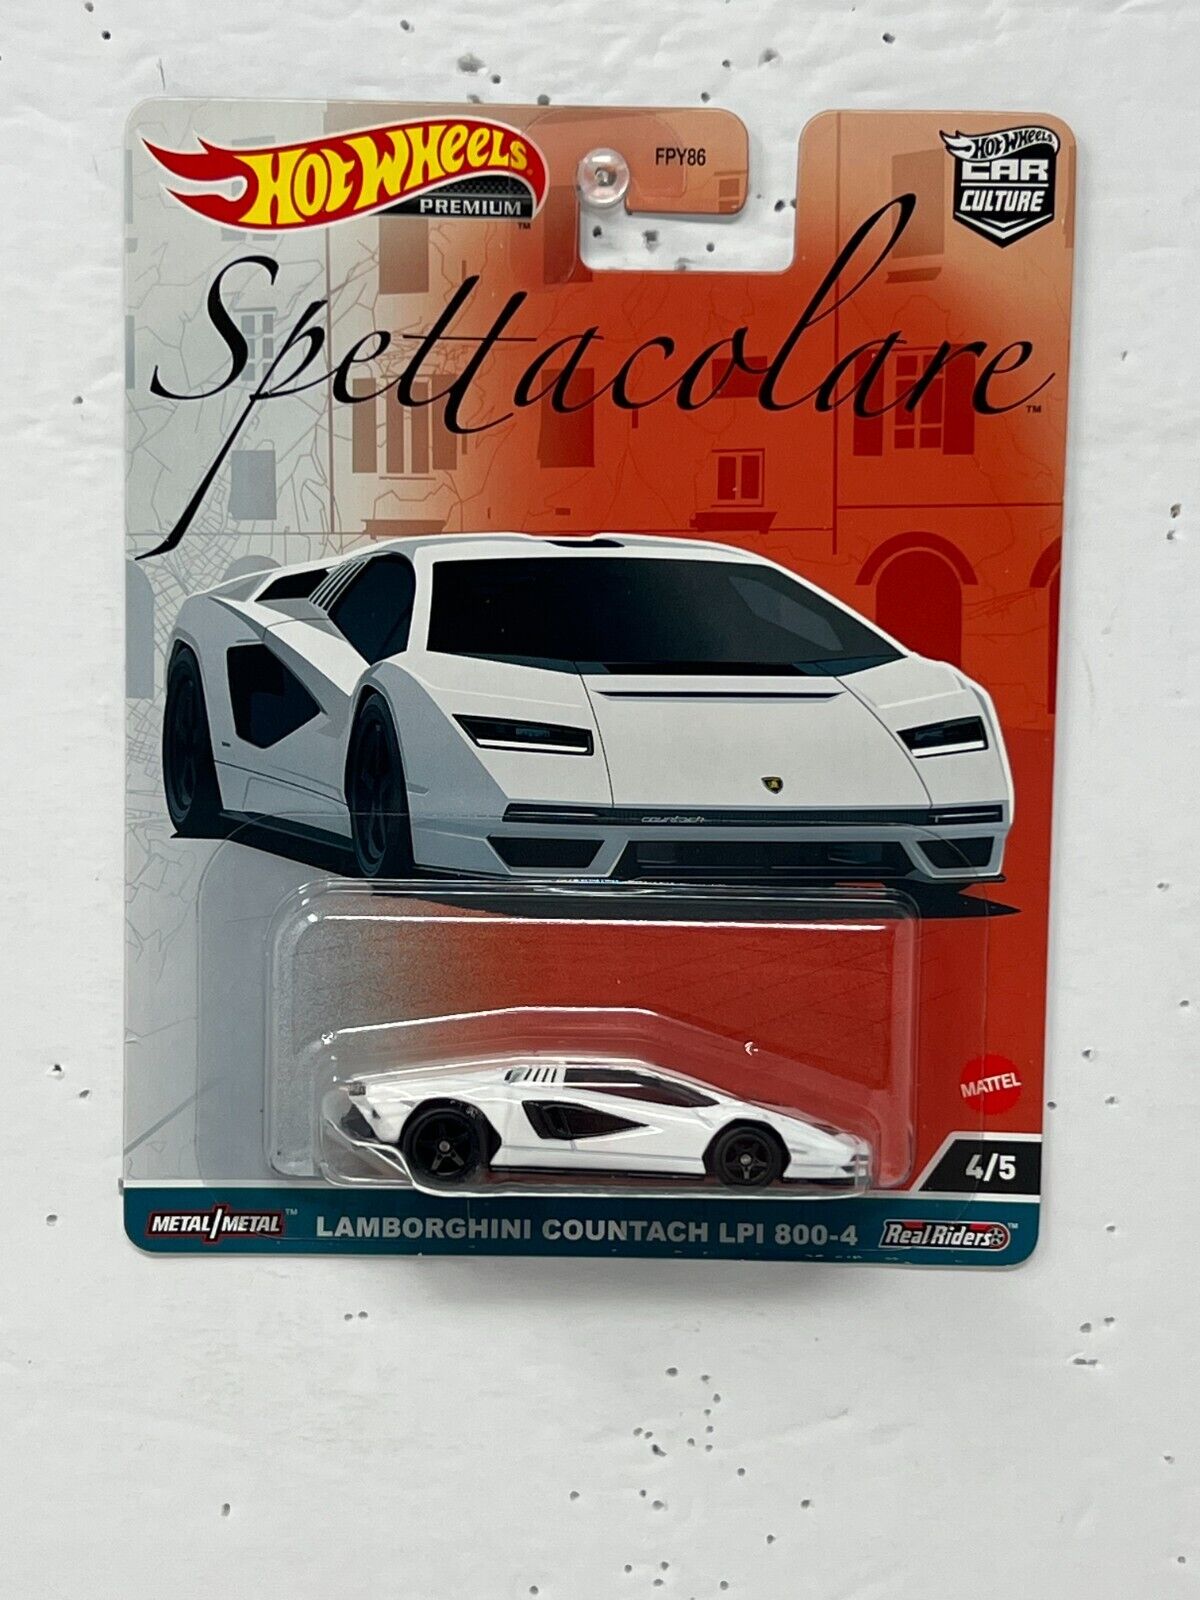 Hot Wheels Premium Spettacolare Lamborghini Countach LPI 800-4 1:64 Diecast